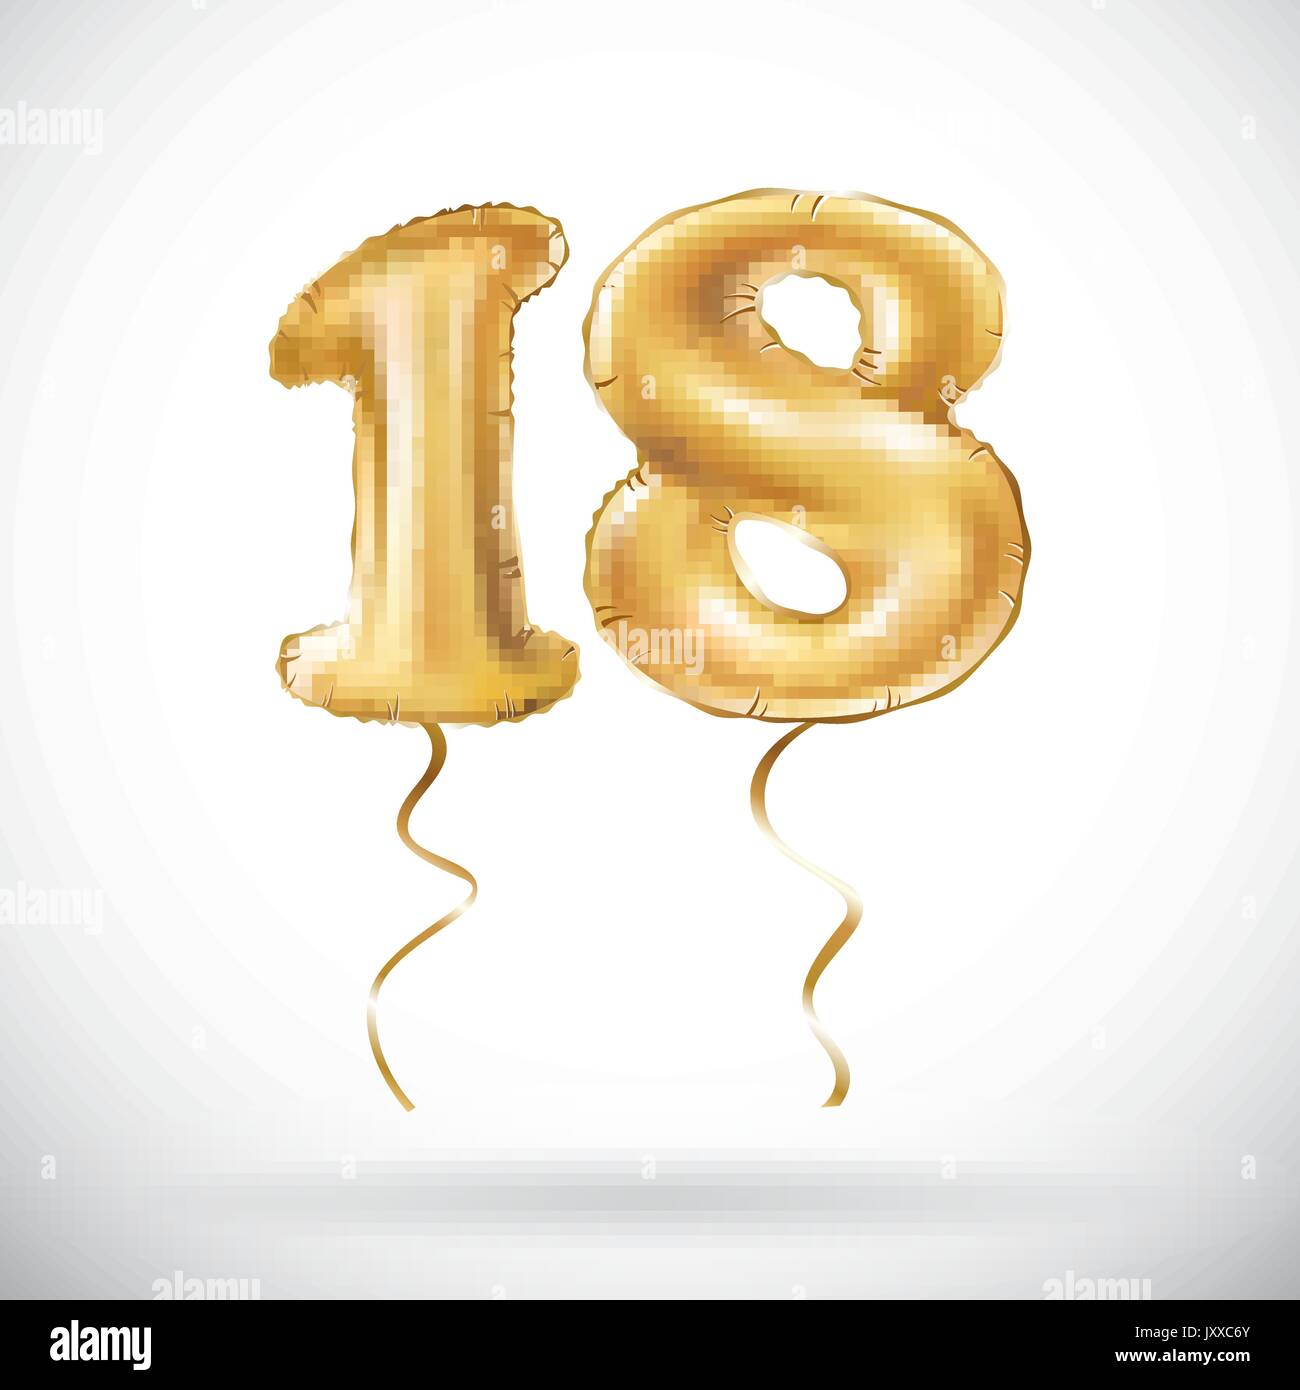 18 Número Globo 18 Cumpleaños Decoraciones Globos de Oro Globos de